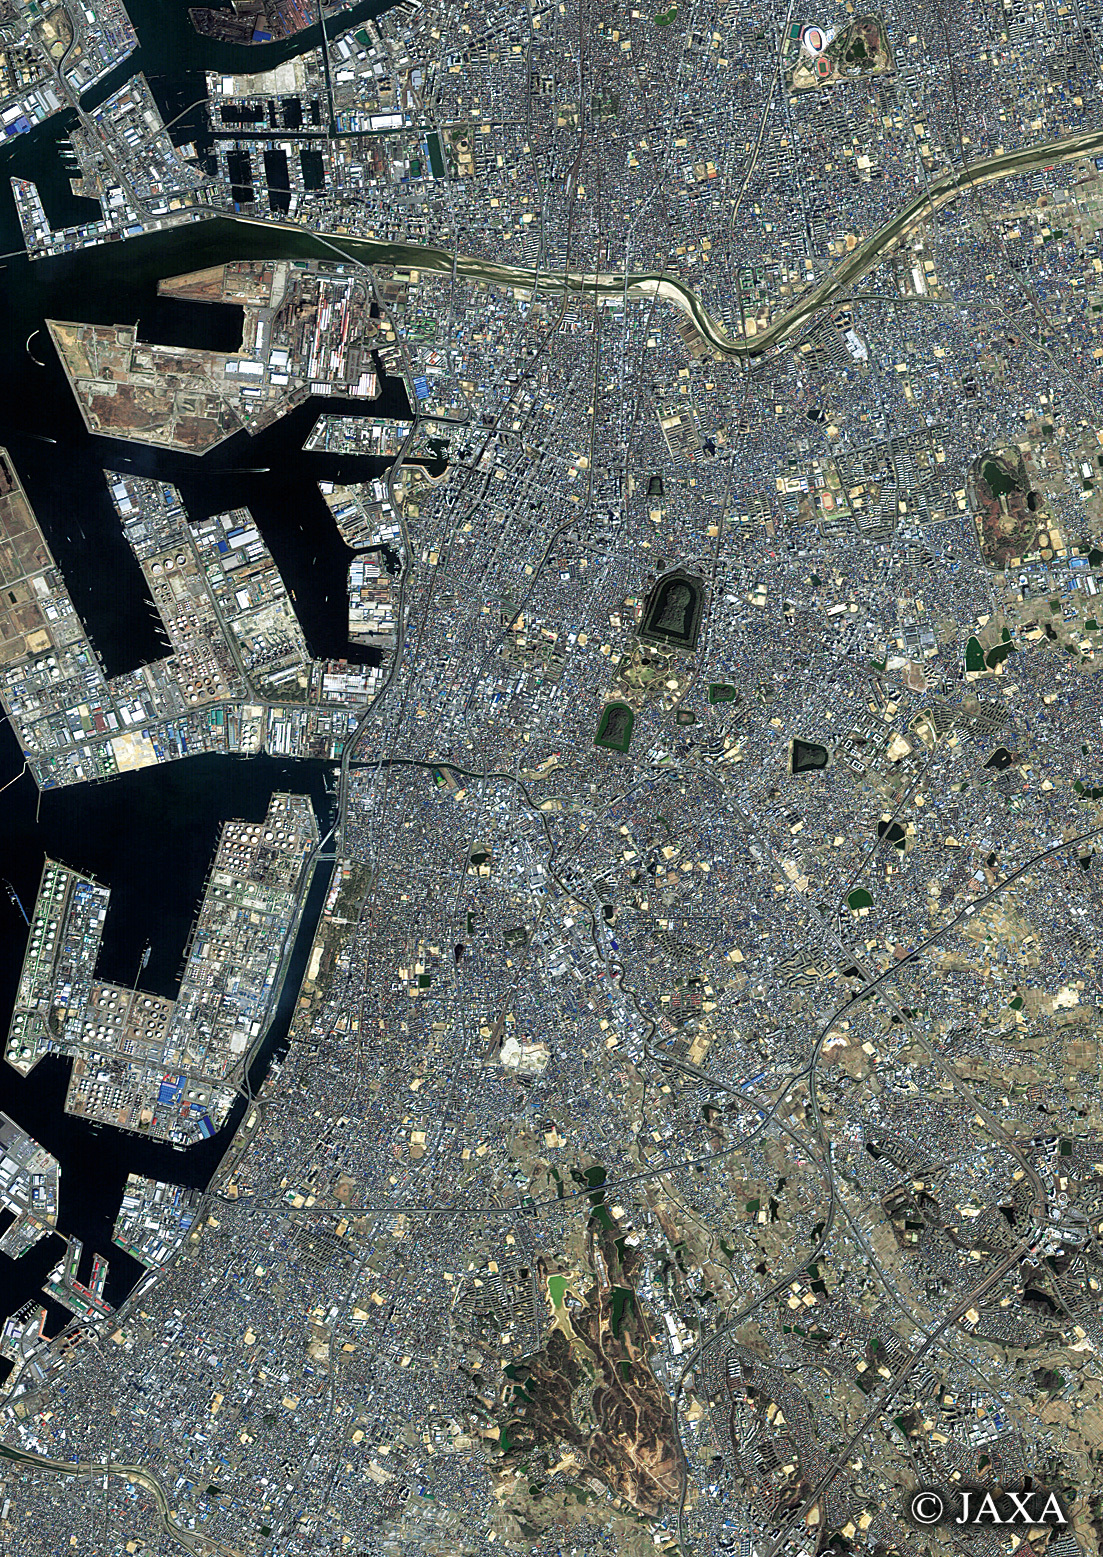 だいちから見た日本の都市 仁徳天皇陵周辺:衛星画像